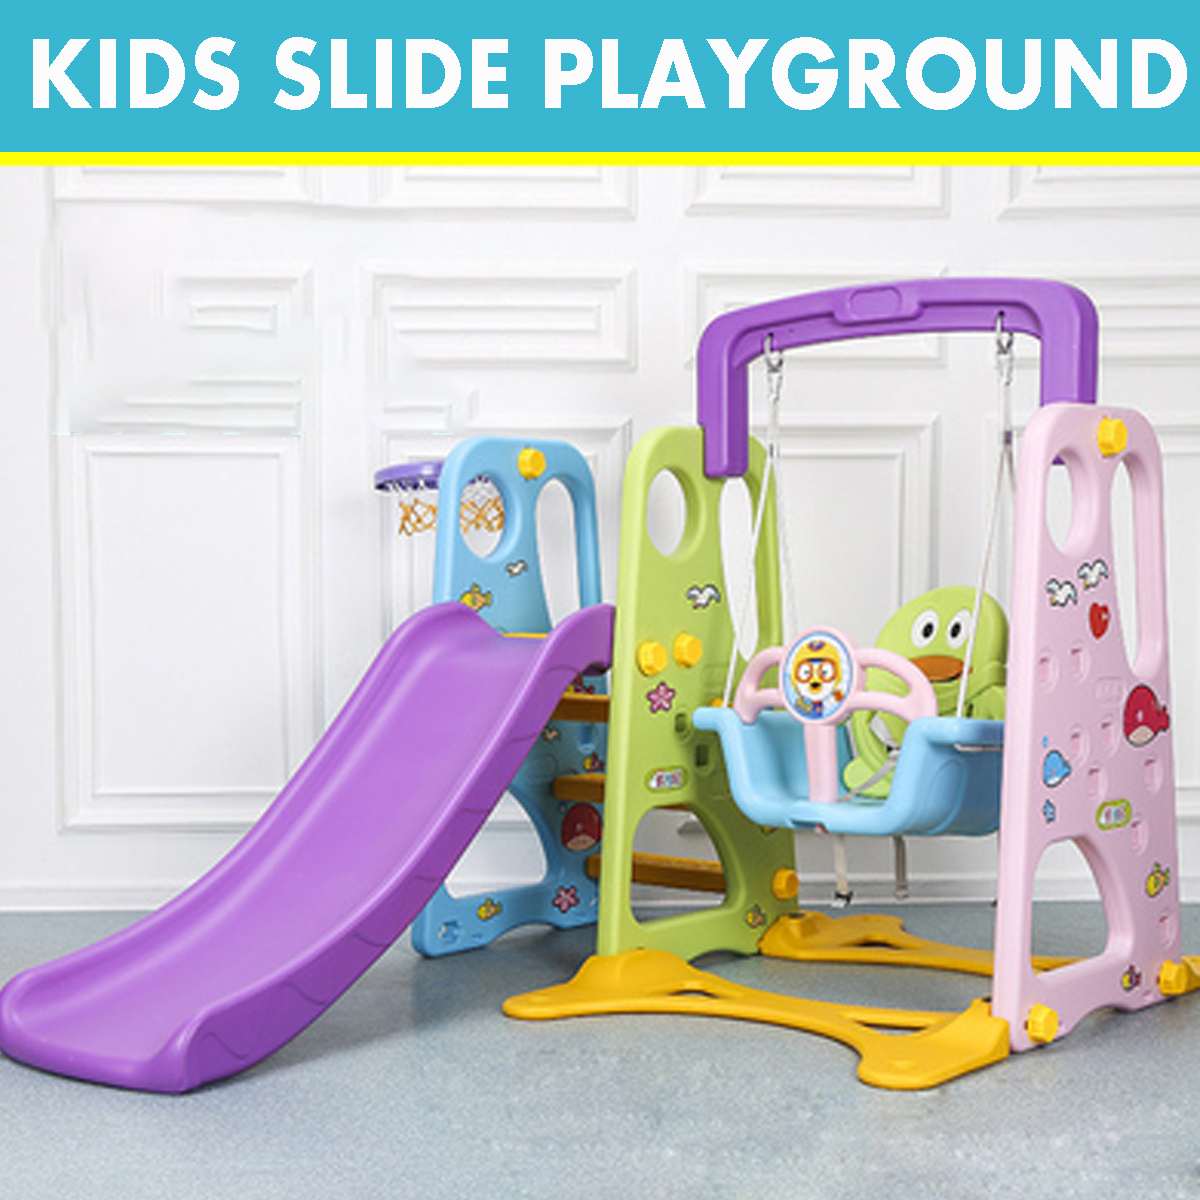 3 In 1 Kids Swing/Slide/ Basketball Hoop Playground